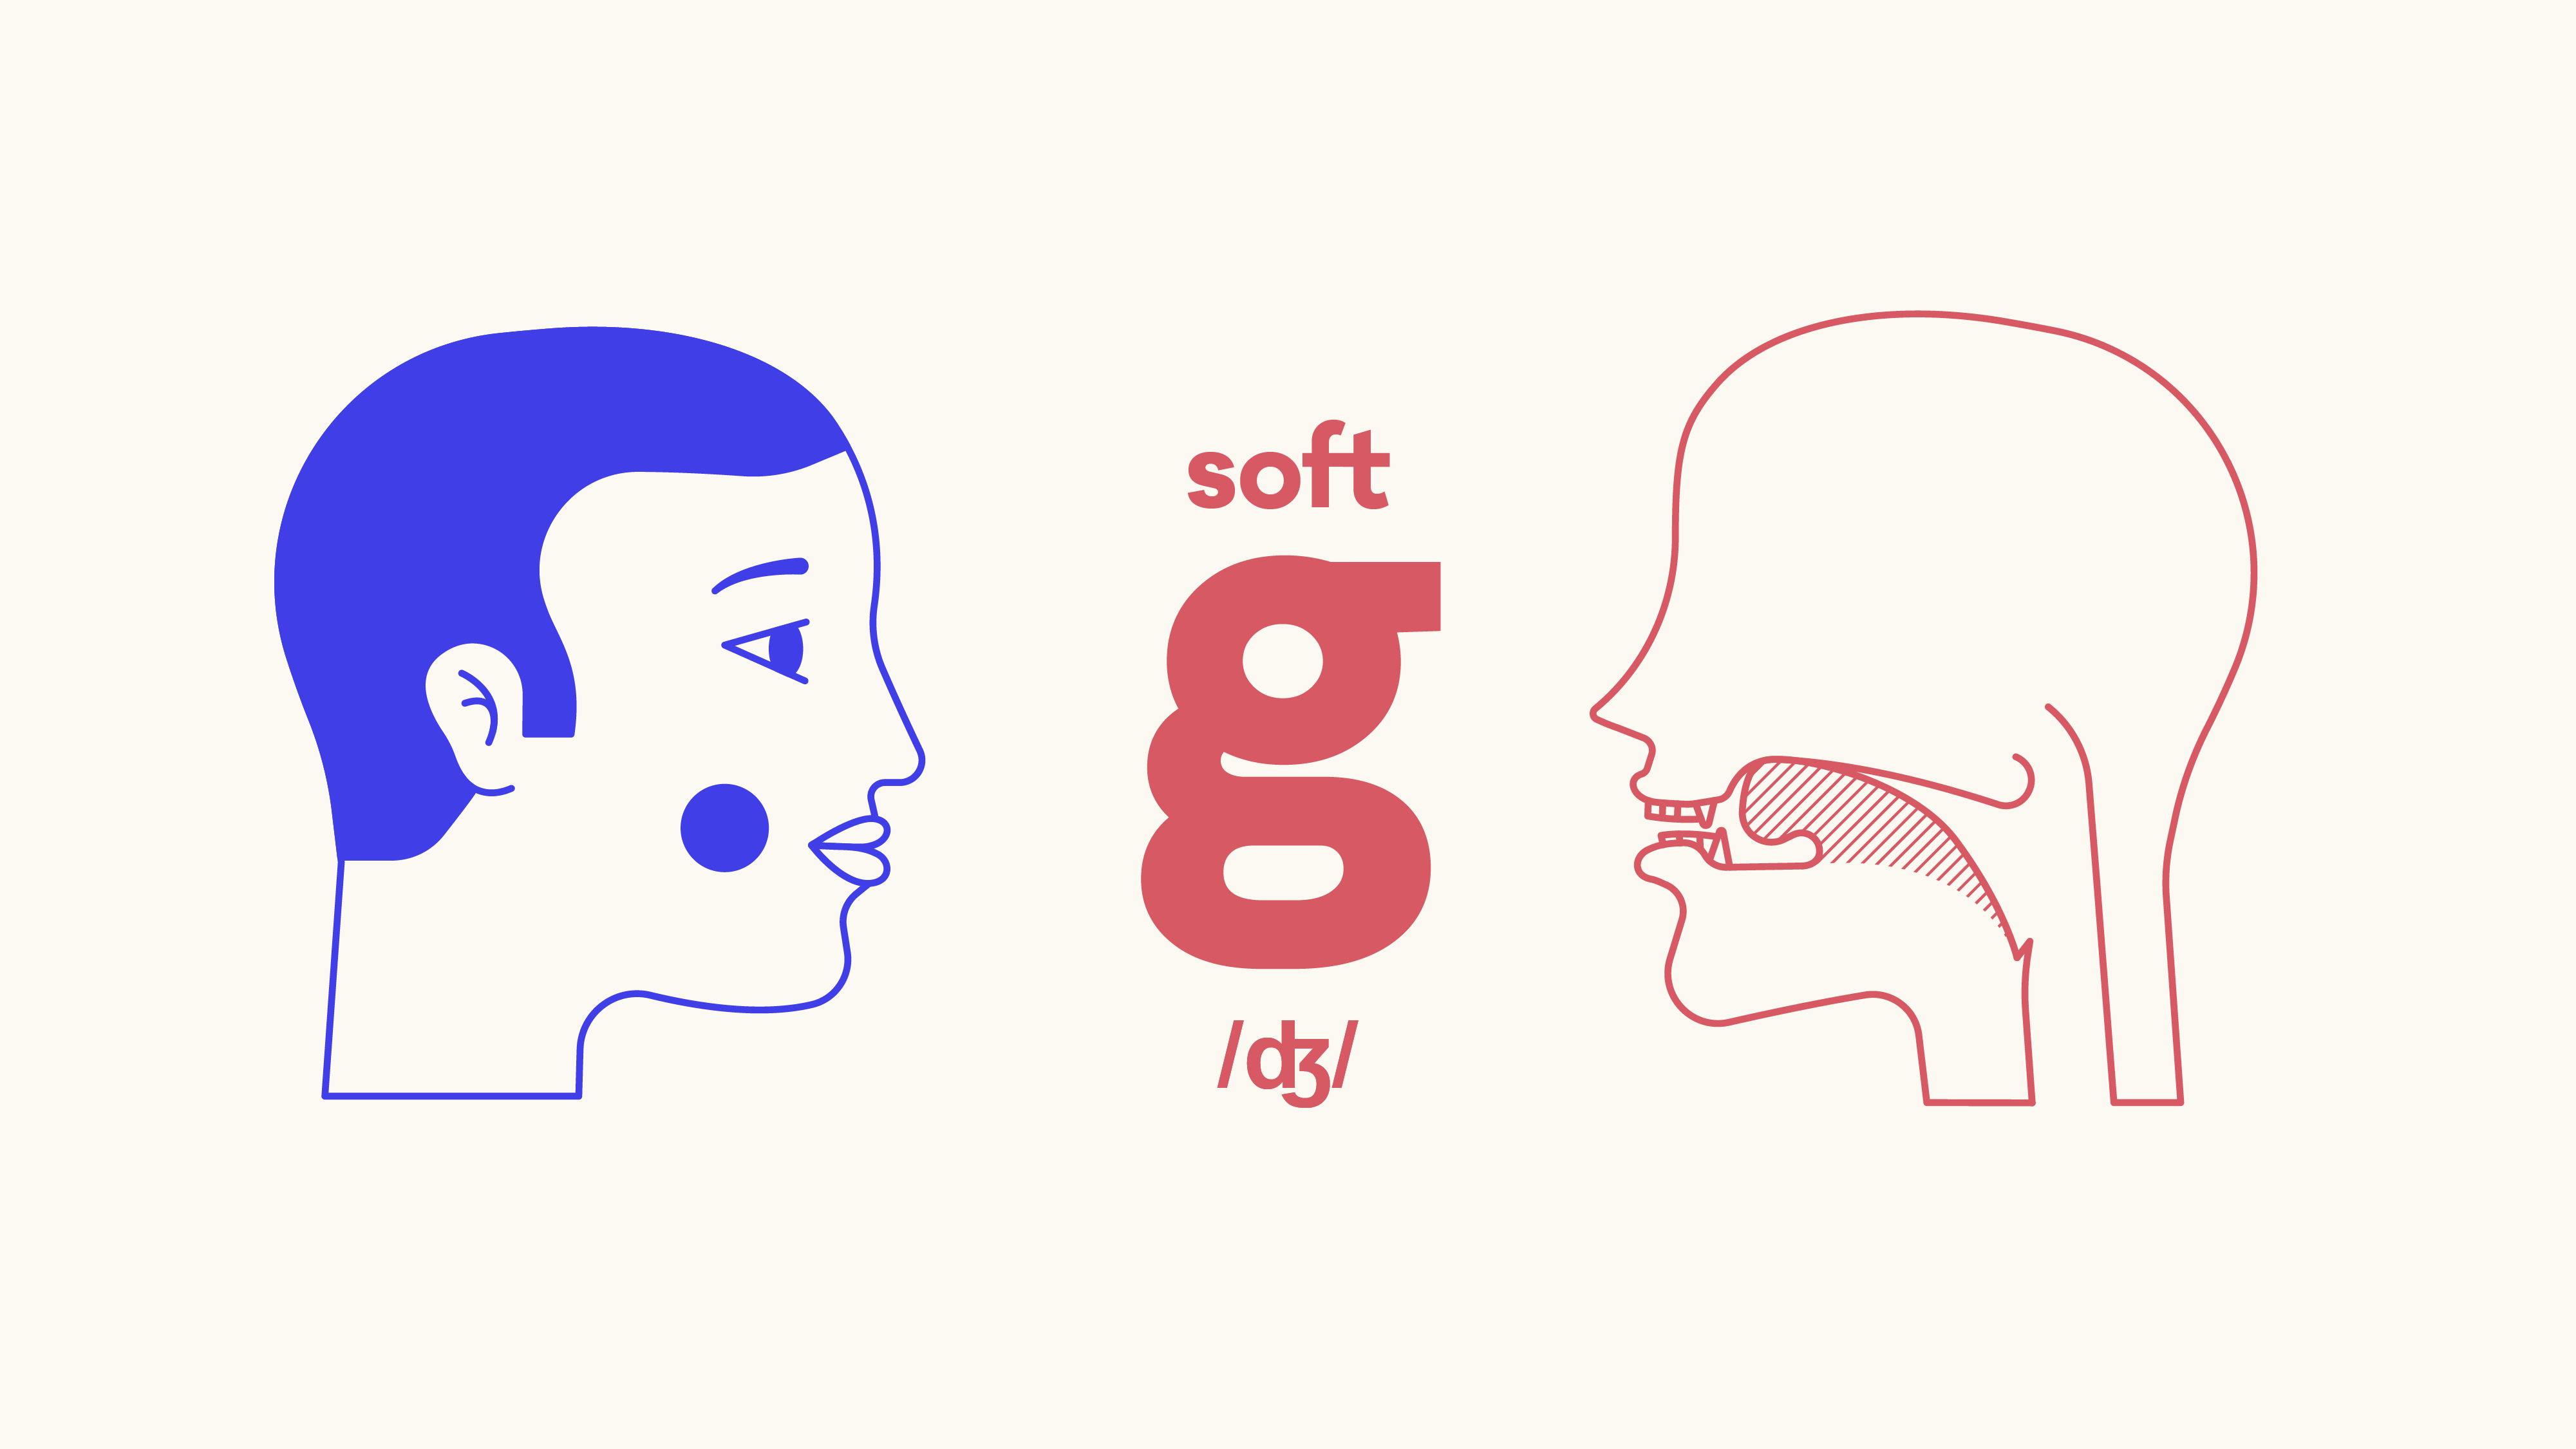 Pronunciation: Soft G